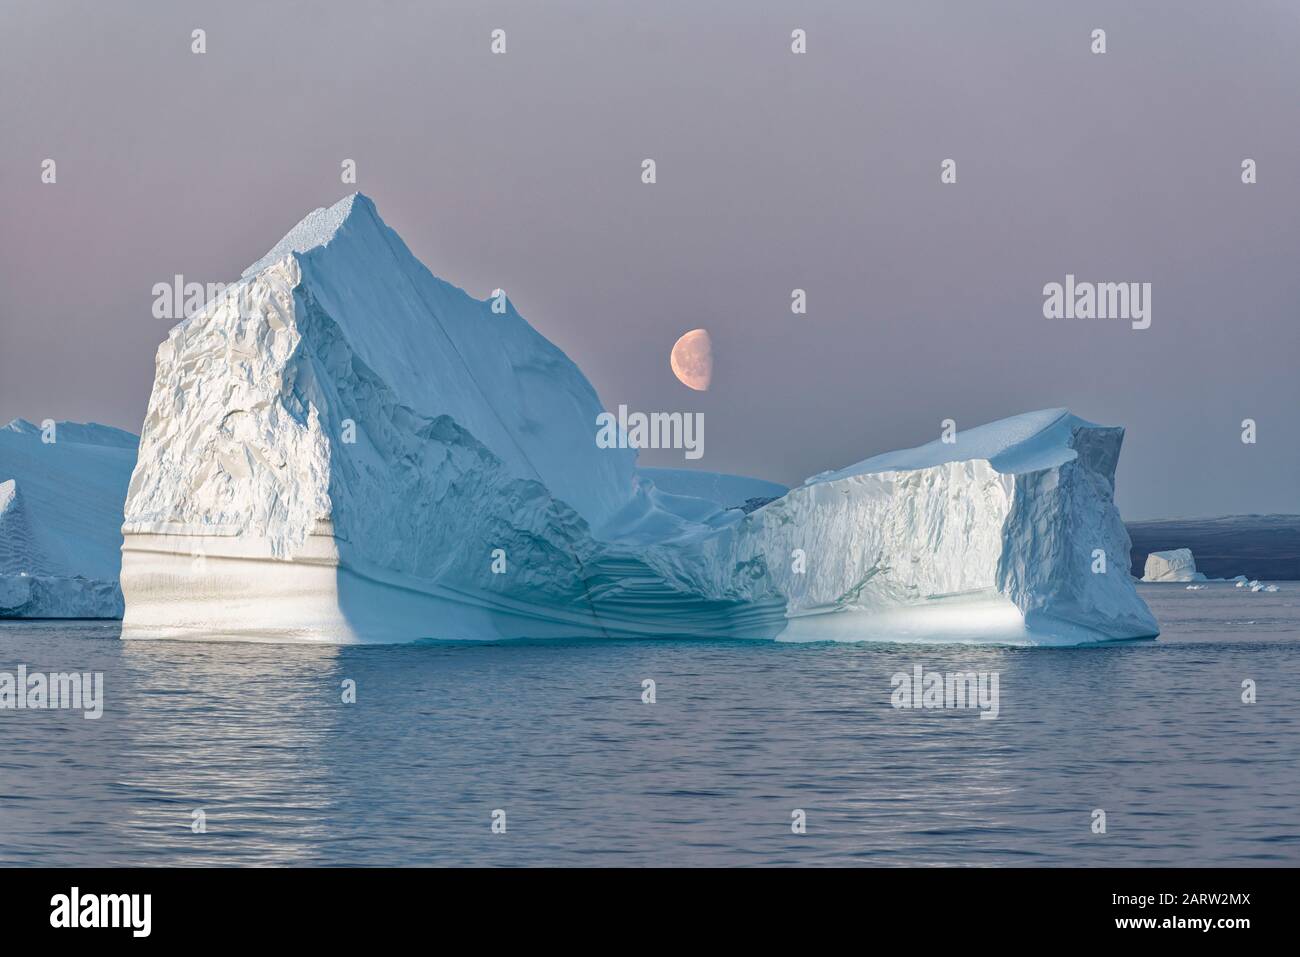 Riesiger schwimmender Eisberg in einem Fjord bei Sonnenuntergang mit Mond in der Mitte, Fjord, Scoresby Sund, Kangertittivaq, Grönland, Dänemark Stockfoto